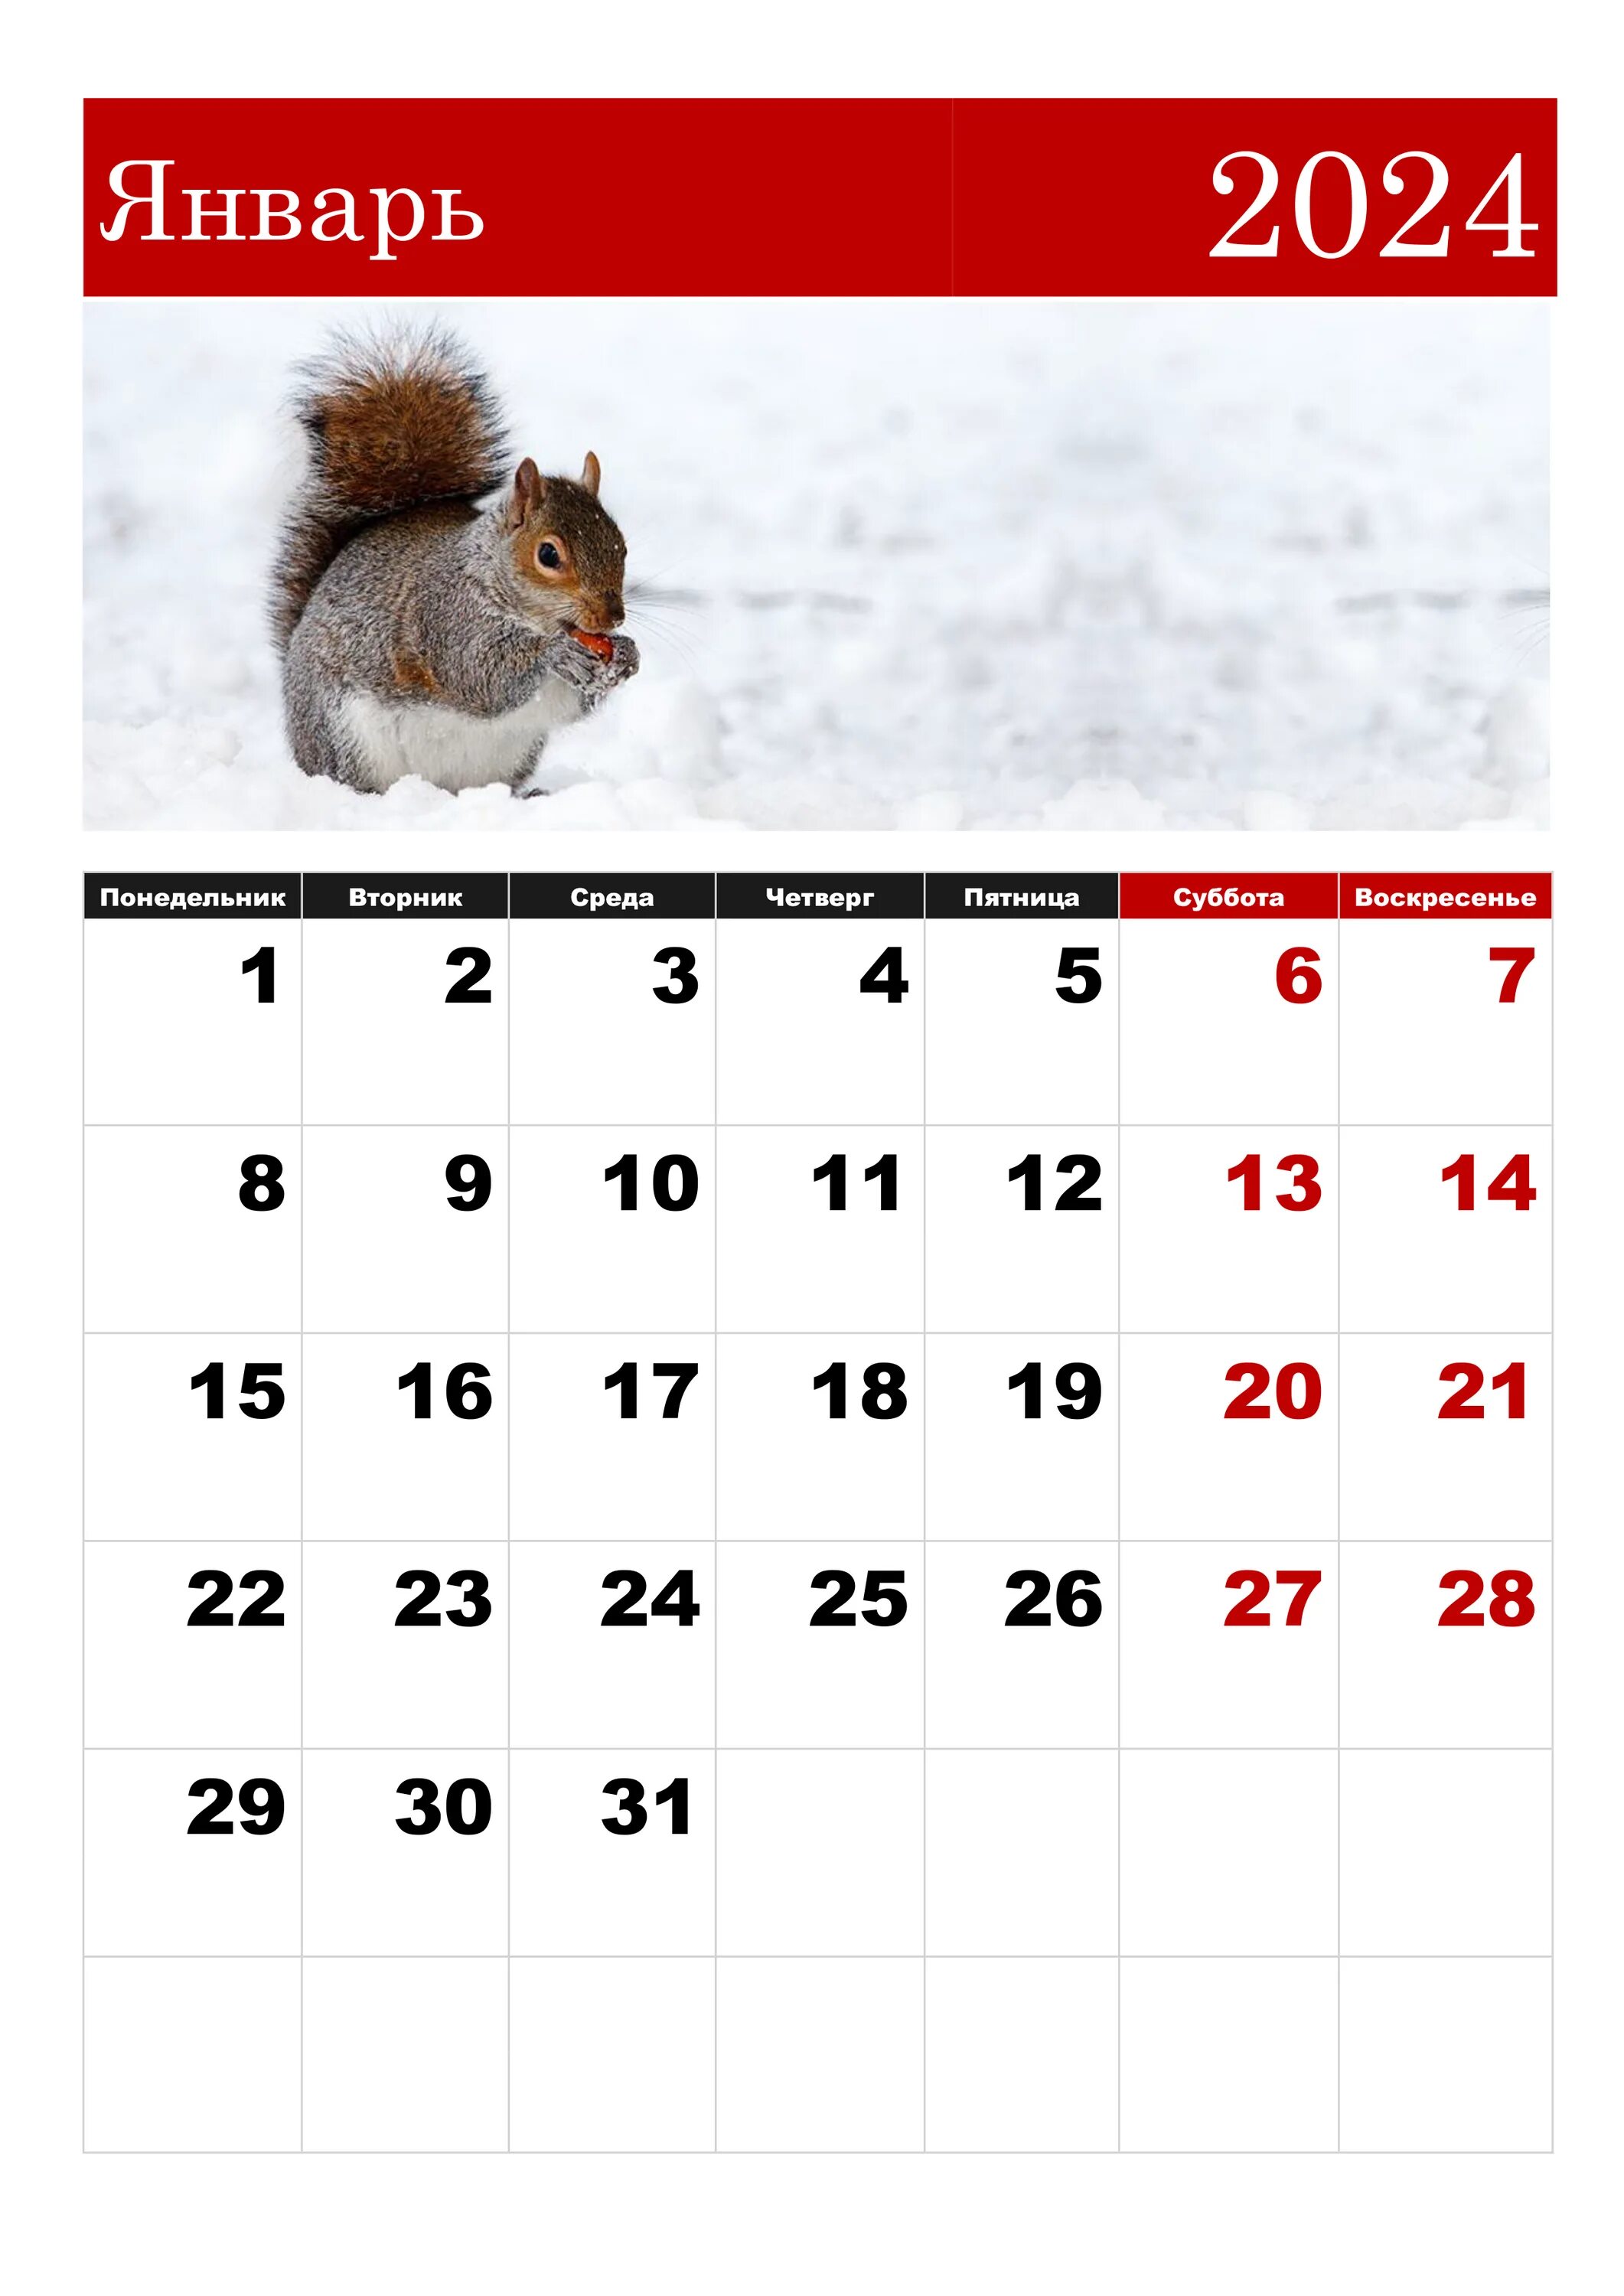 Норма января 2024 года. Календарная январь 2024. ЯНВАРЬРЬ 2024. Календарь январь. Календарь на январь 2024 года.